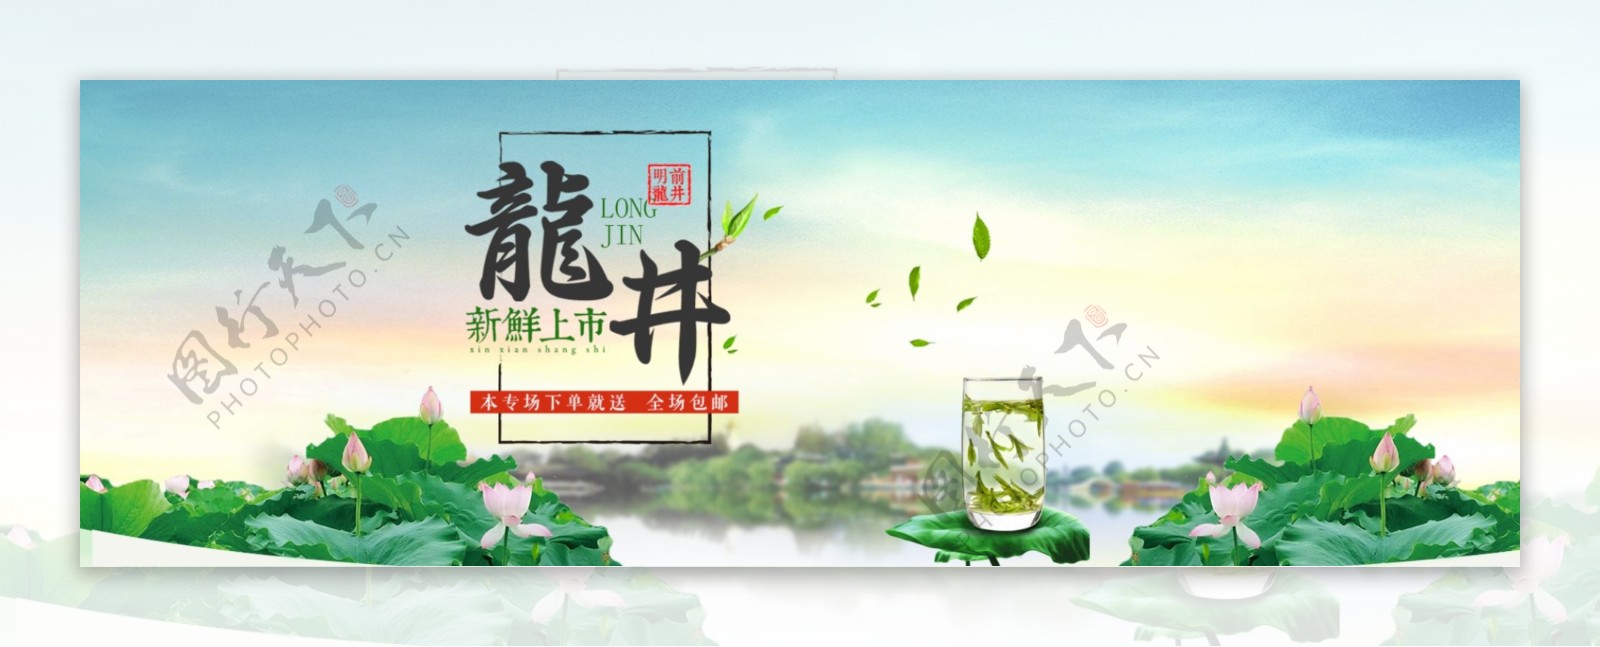 清新中国风淘宝茶叶海报